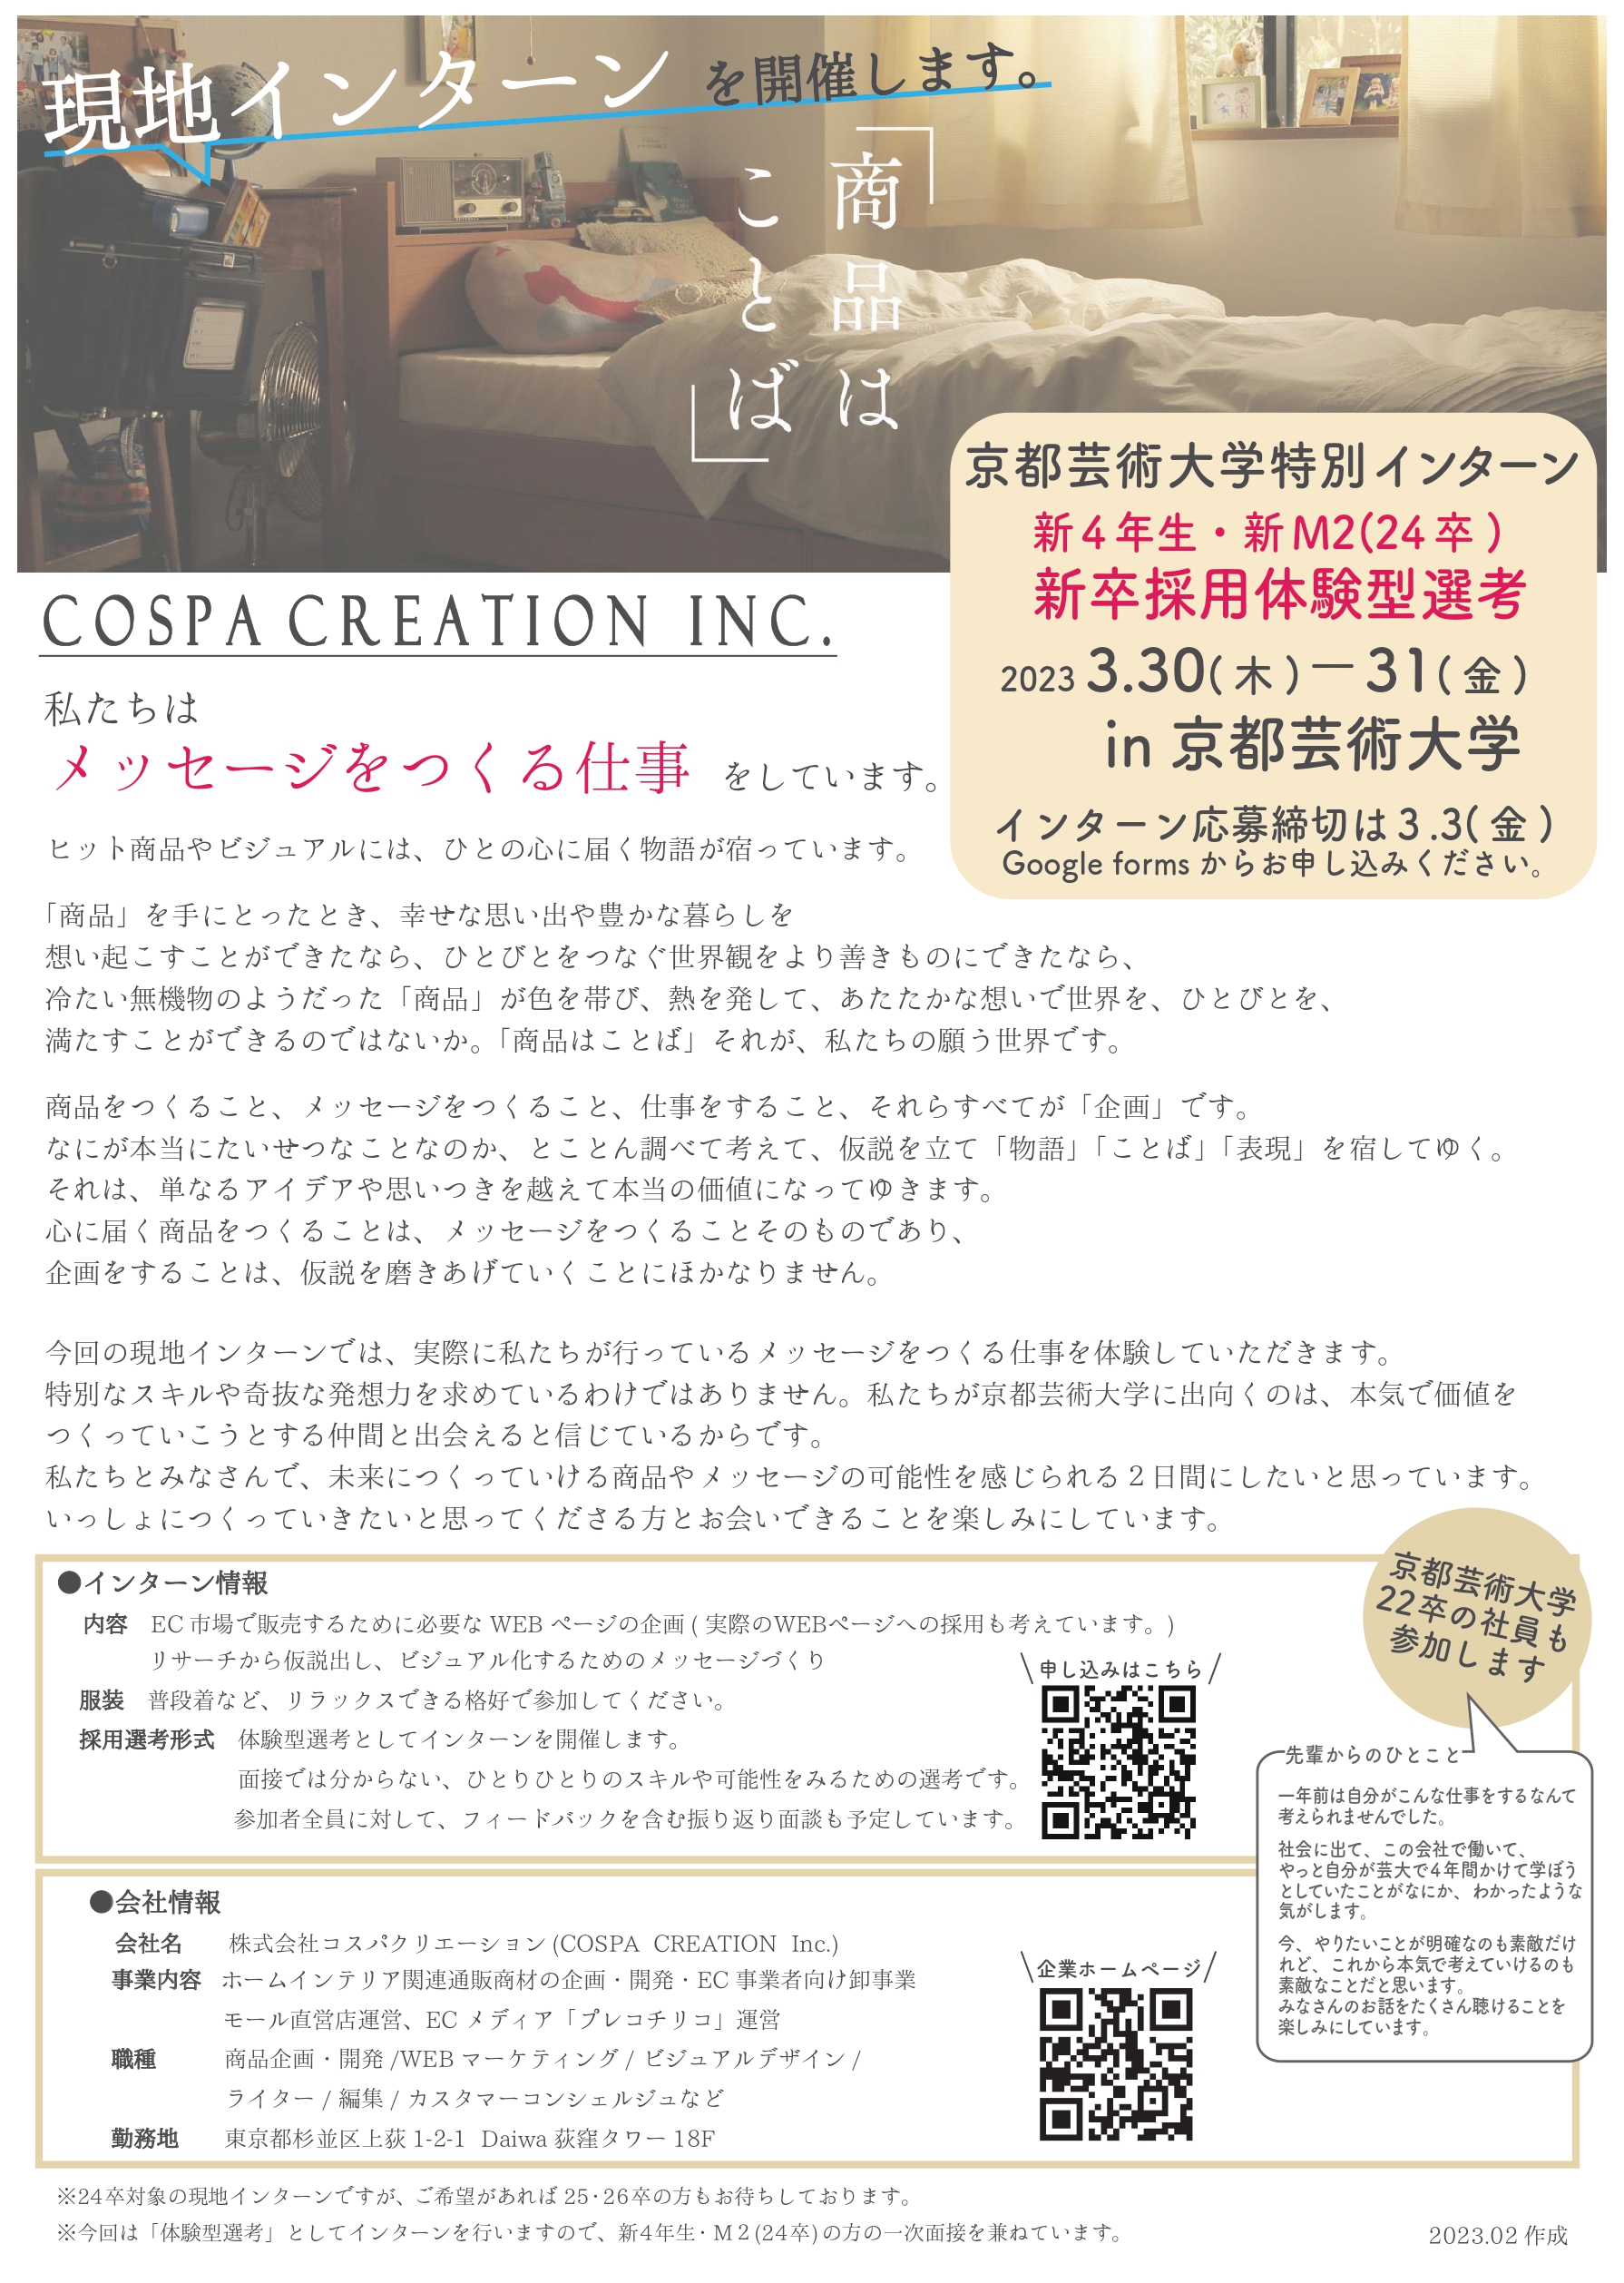 3月30・31日に京都芸術大学で現地インターンを開催します。